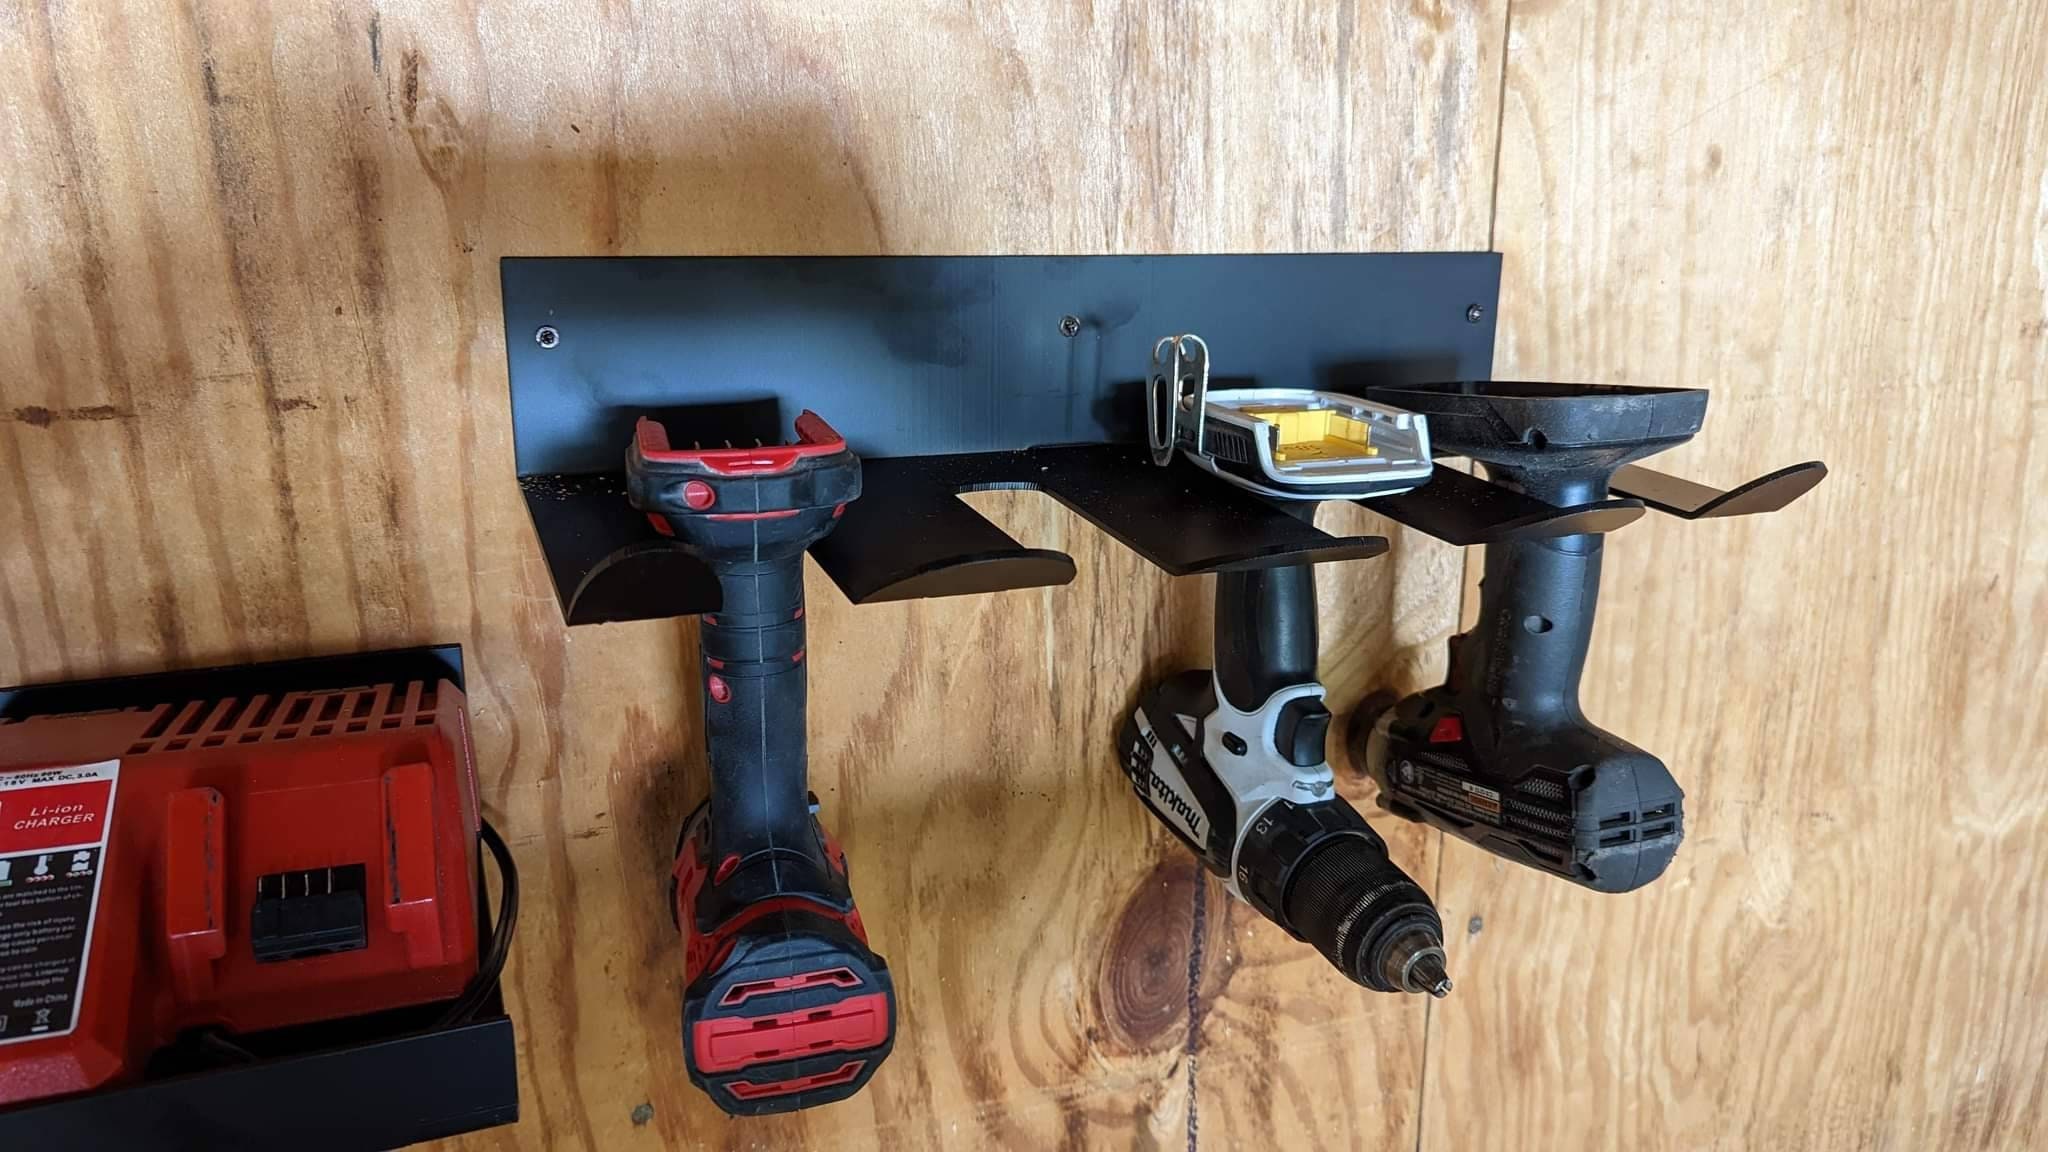 Organisation d'outils électriques pour mur, rangement de garage